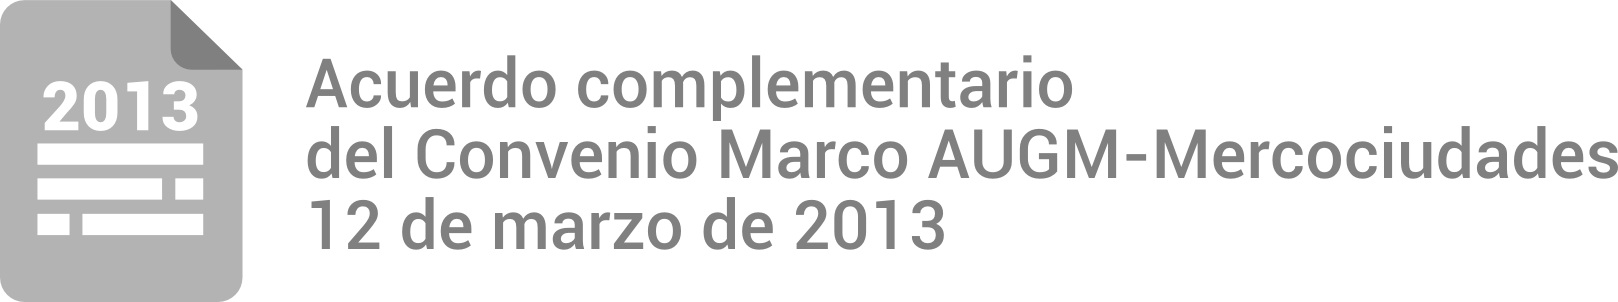 Acuerdo complementario del Convenio Marco AUGM-Mercociudades 12 de marzo de 2013